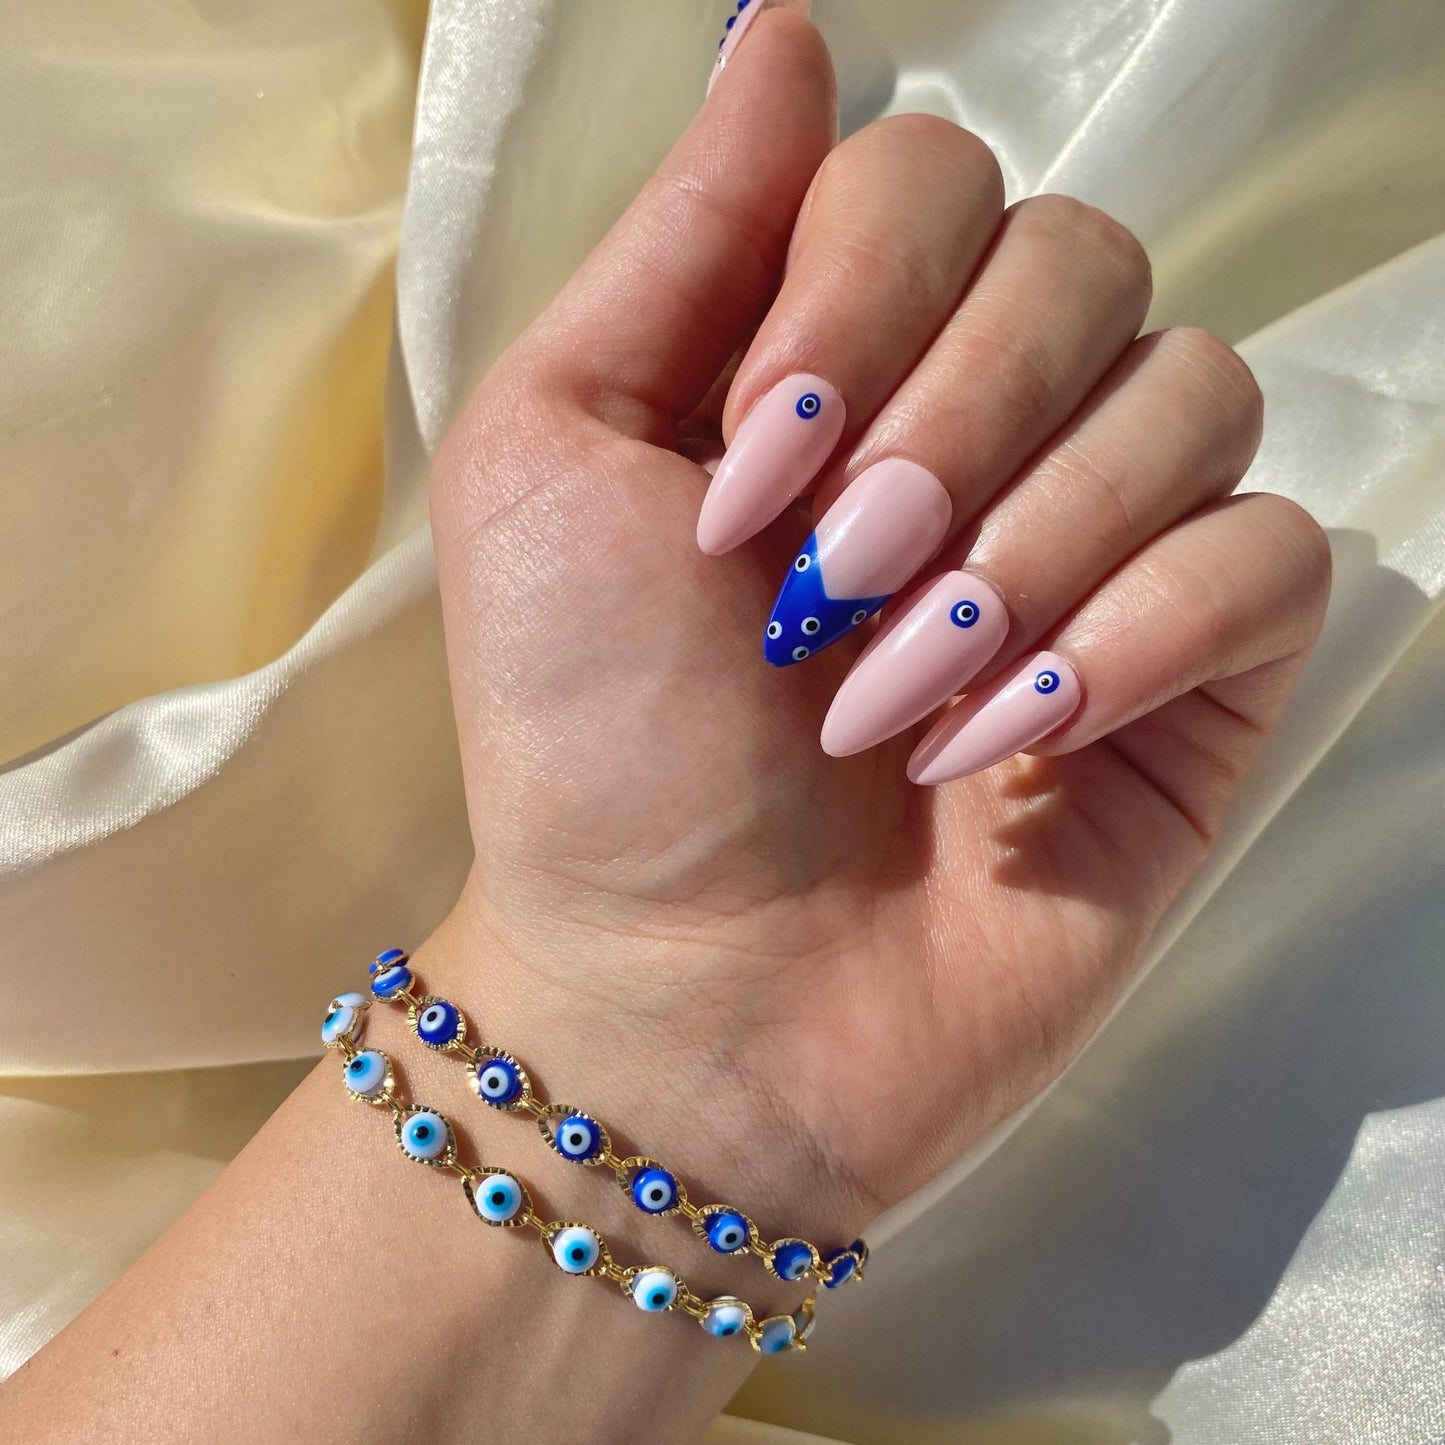 Blue Nazar Bracelet - blunt cases